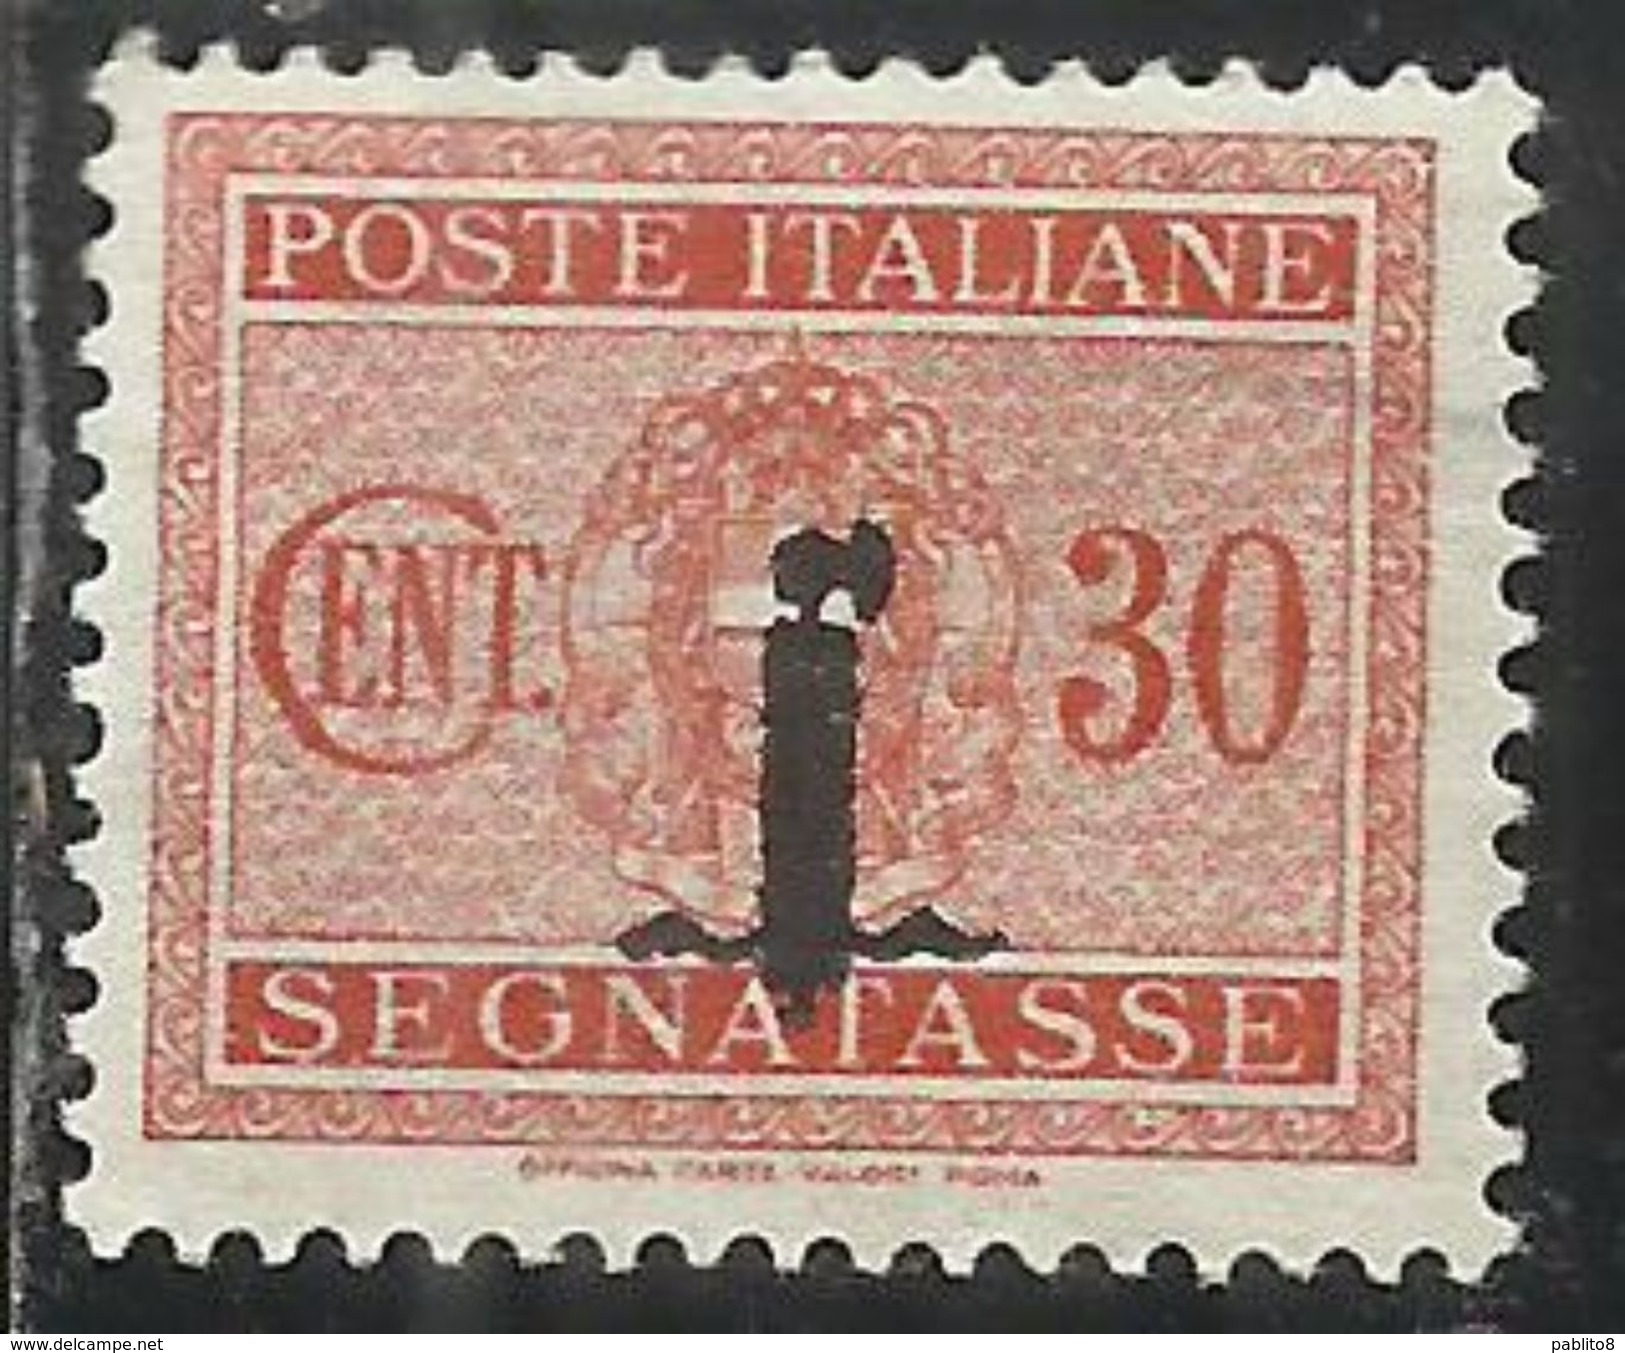 ITALIA REGNO REPUBBLICA SOCIALE RSI 1944 SEGNATASSE POSTAGE DUE PICCOLO FASCIO FASCIETTO CENT. 30 TASSE  MLH - Taxe